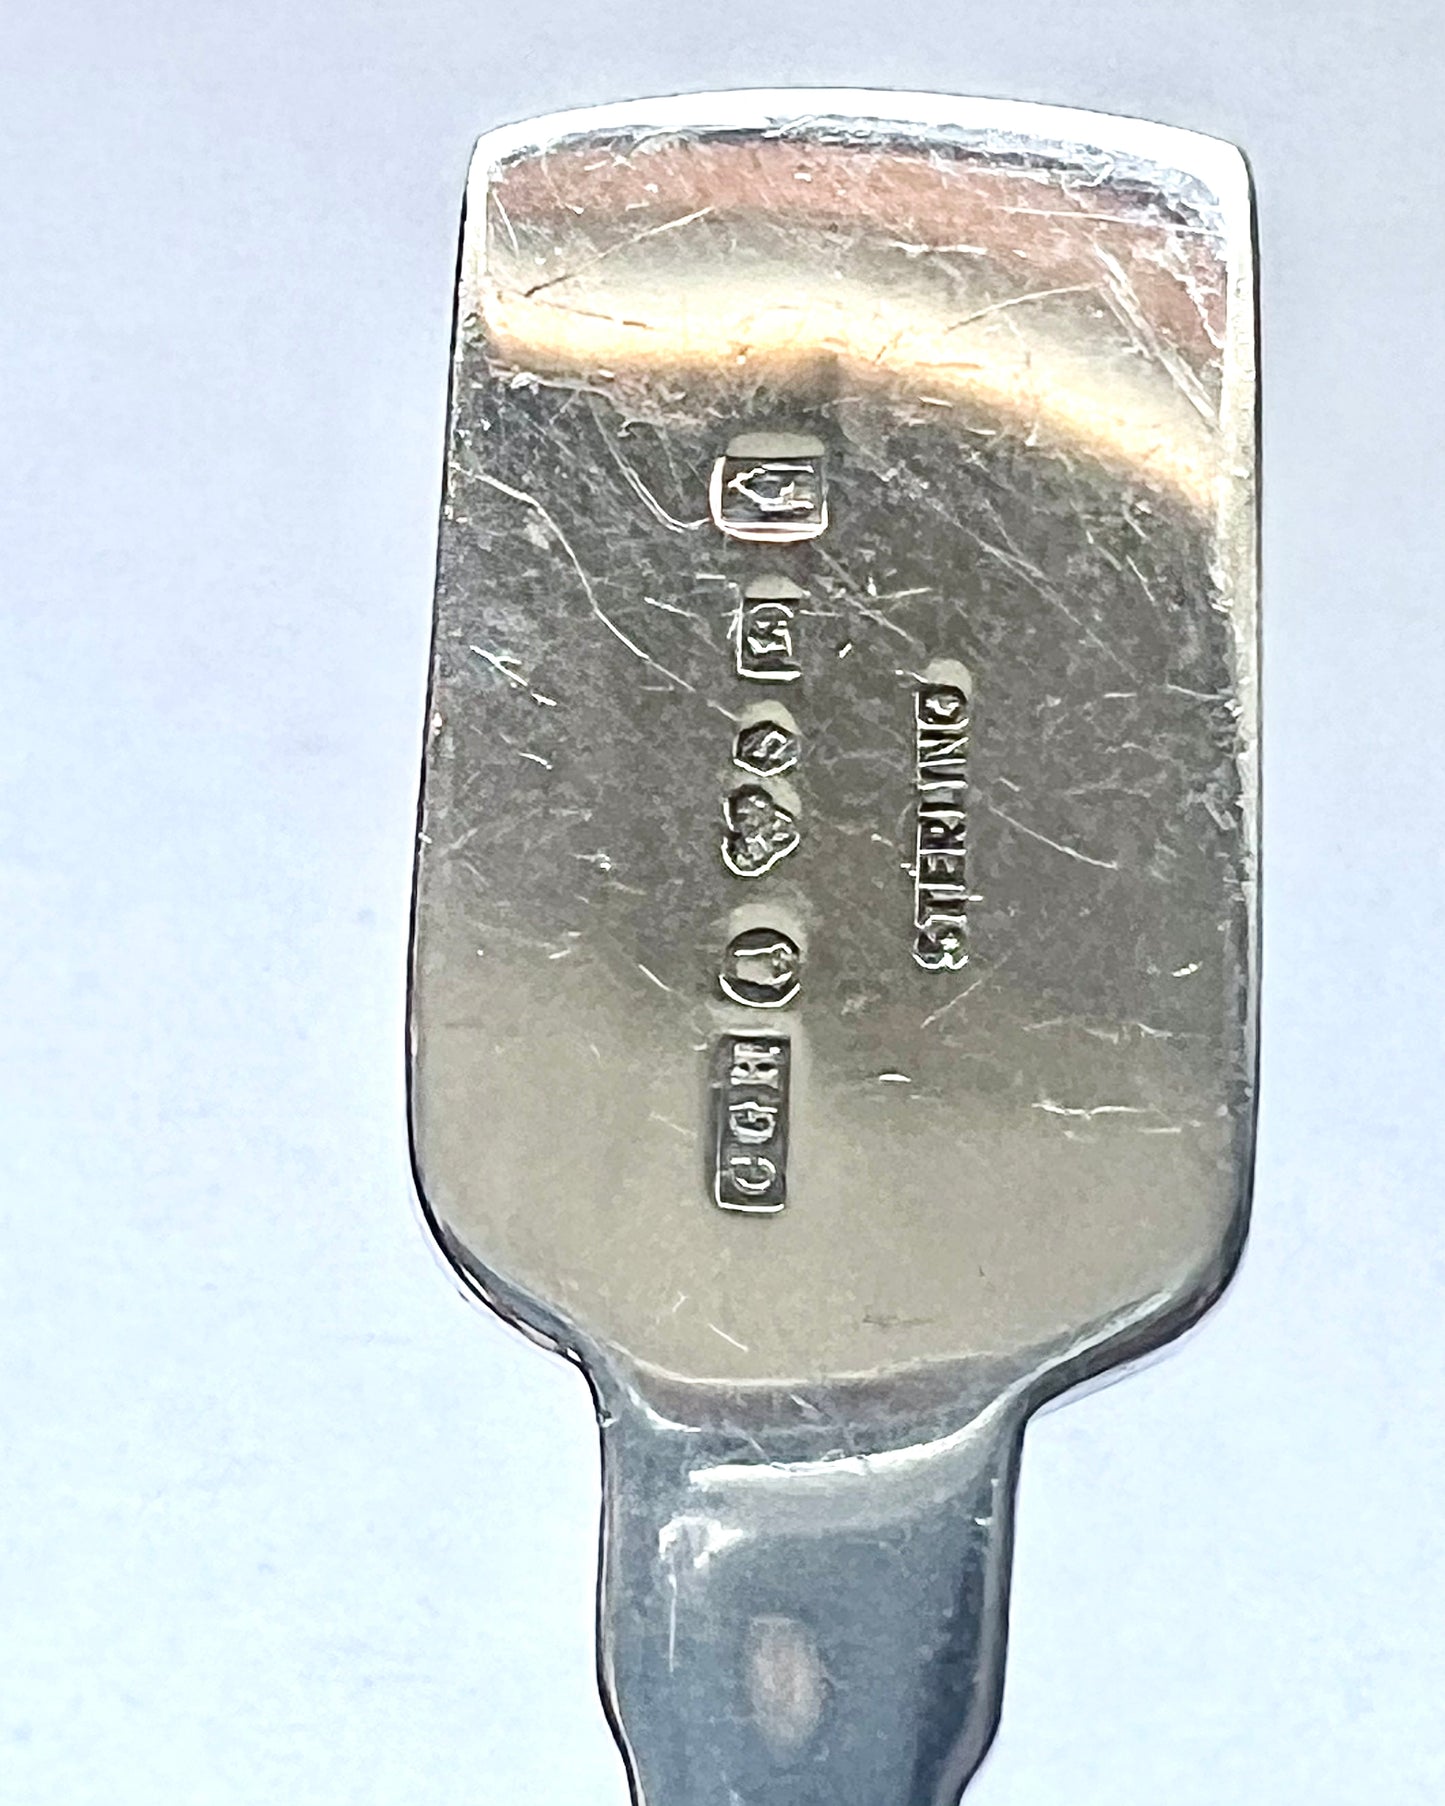 Midcentury modern Scandinavian Swedish sterling silver spoon by C.G. Hallbergs GAB